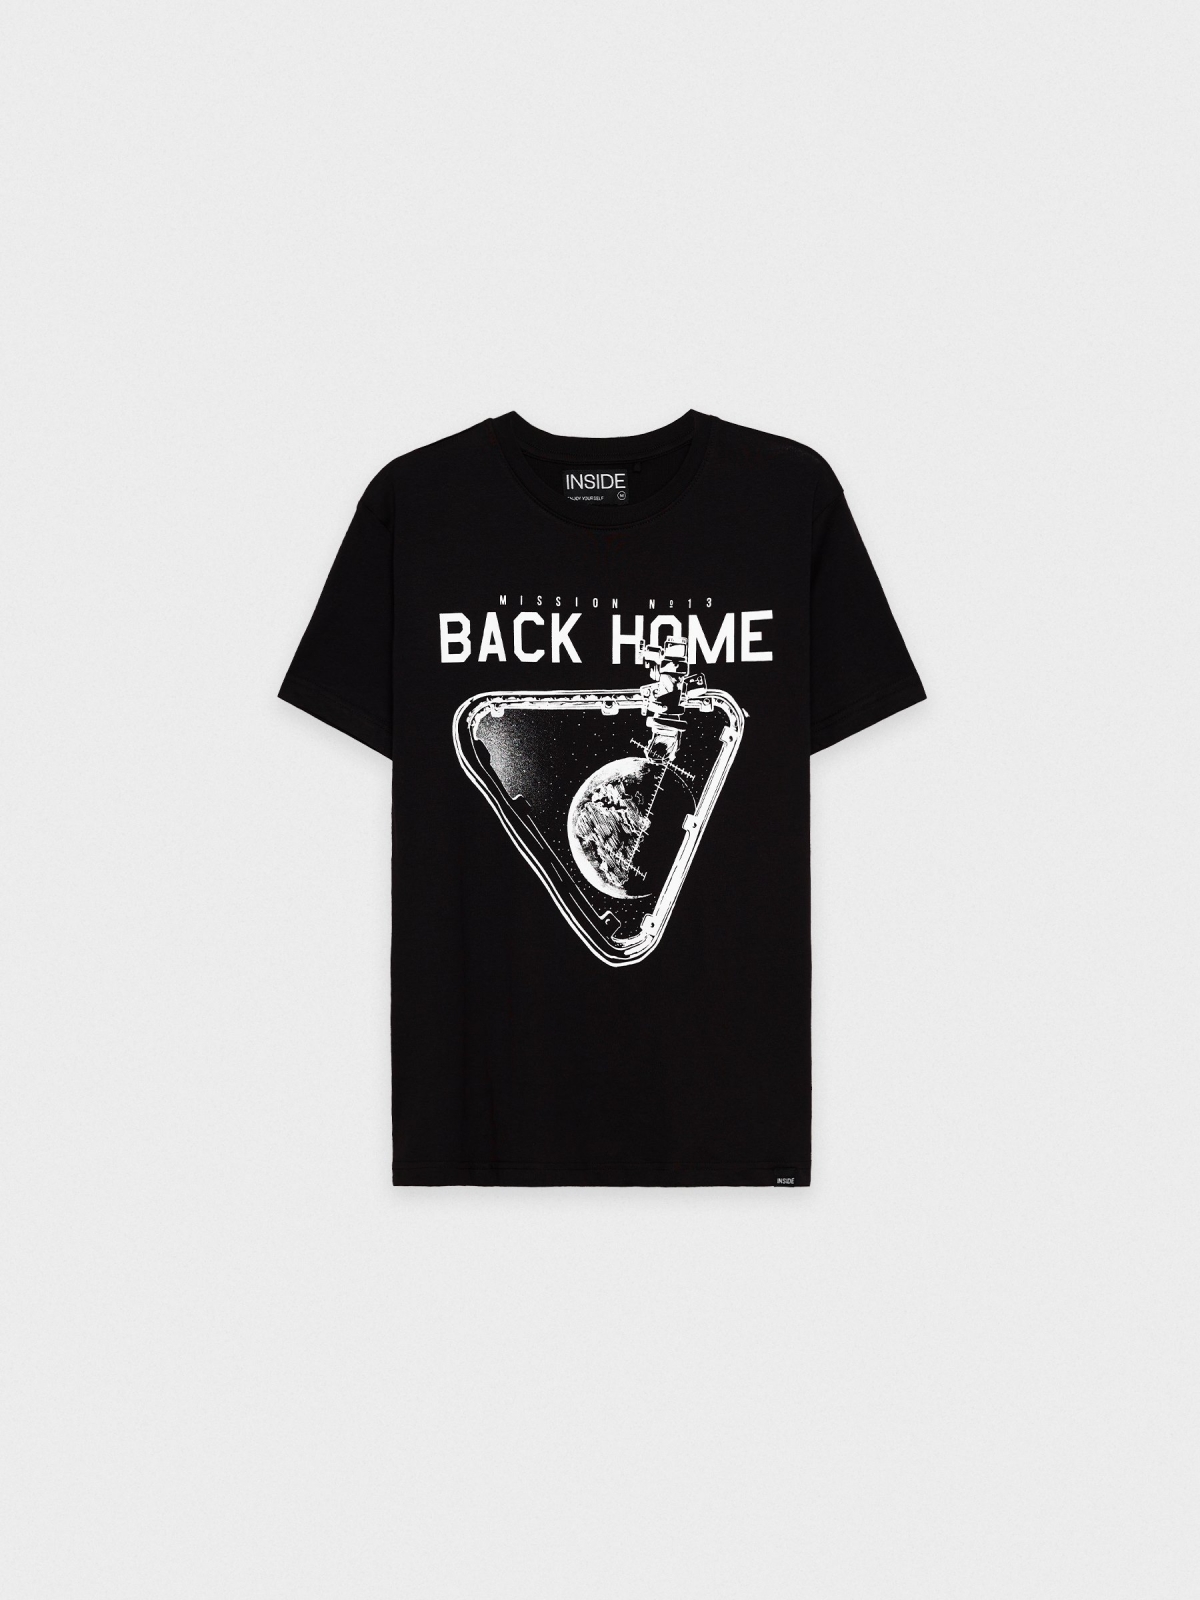  T-shirt Espaço preto